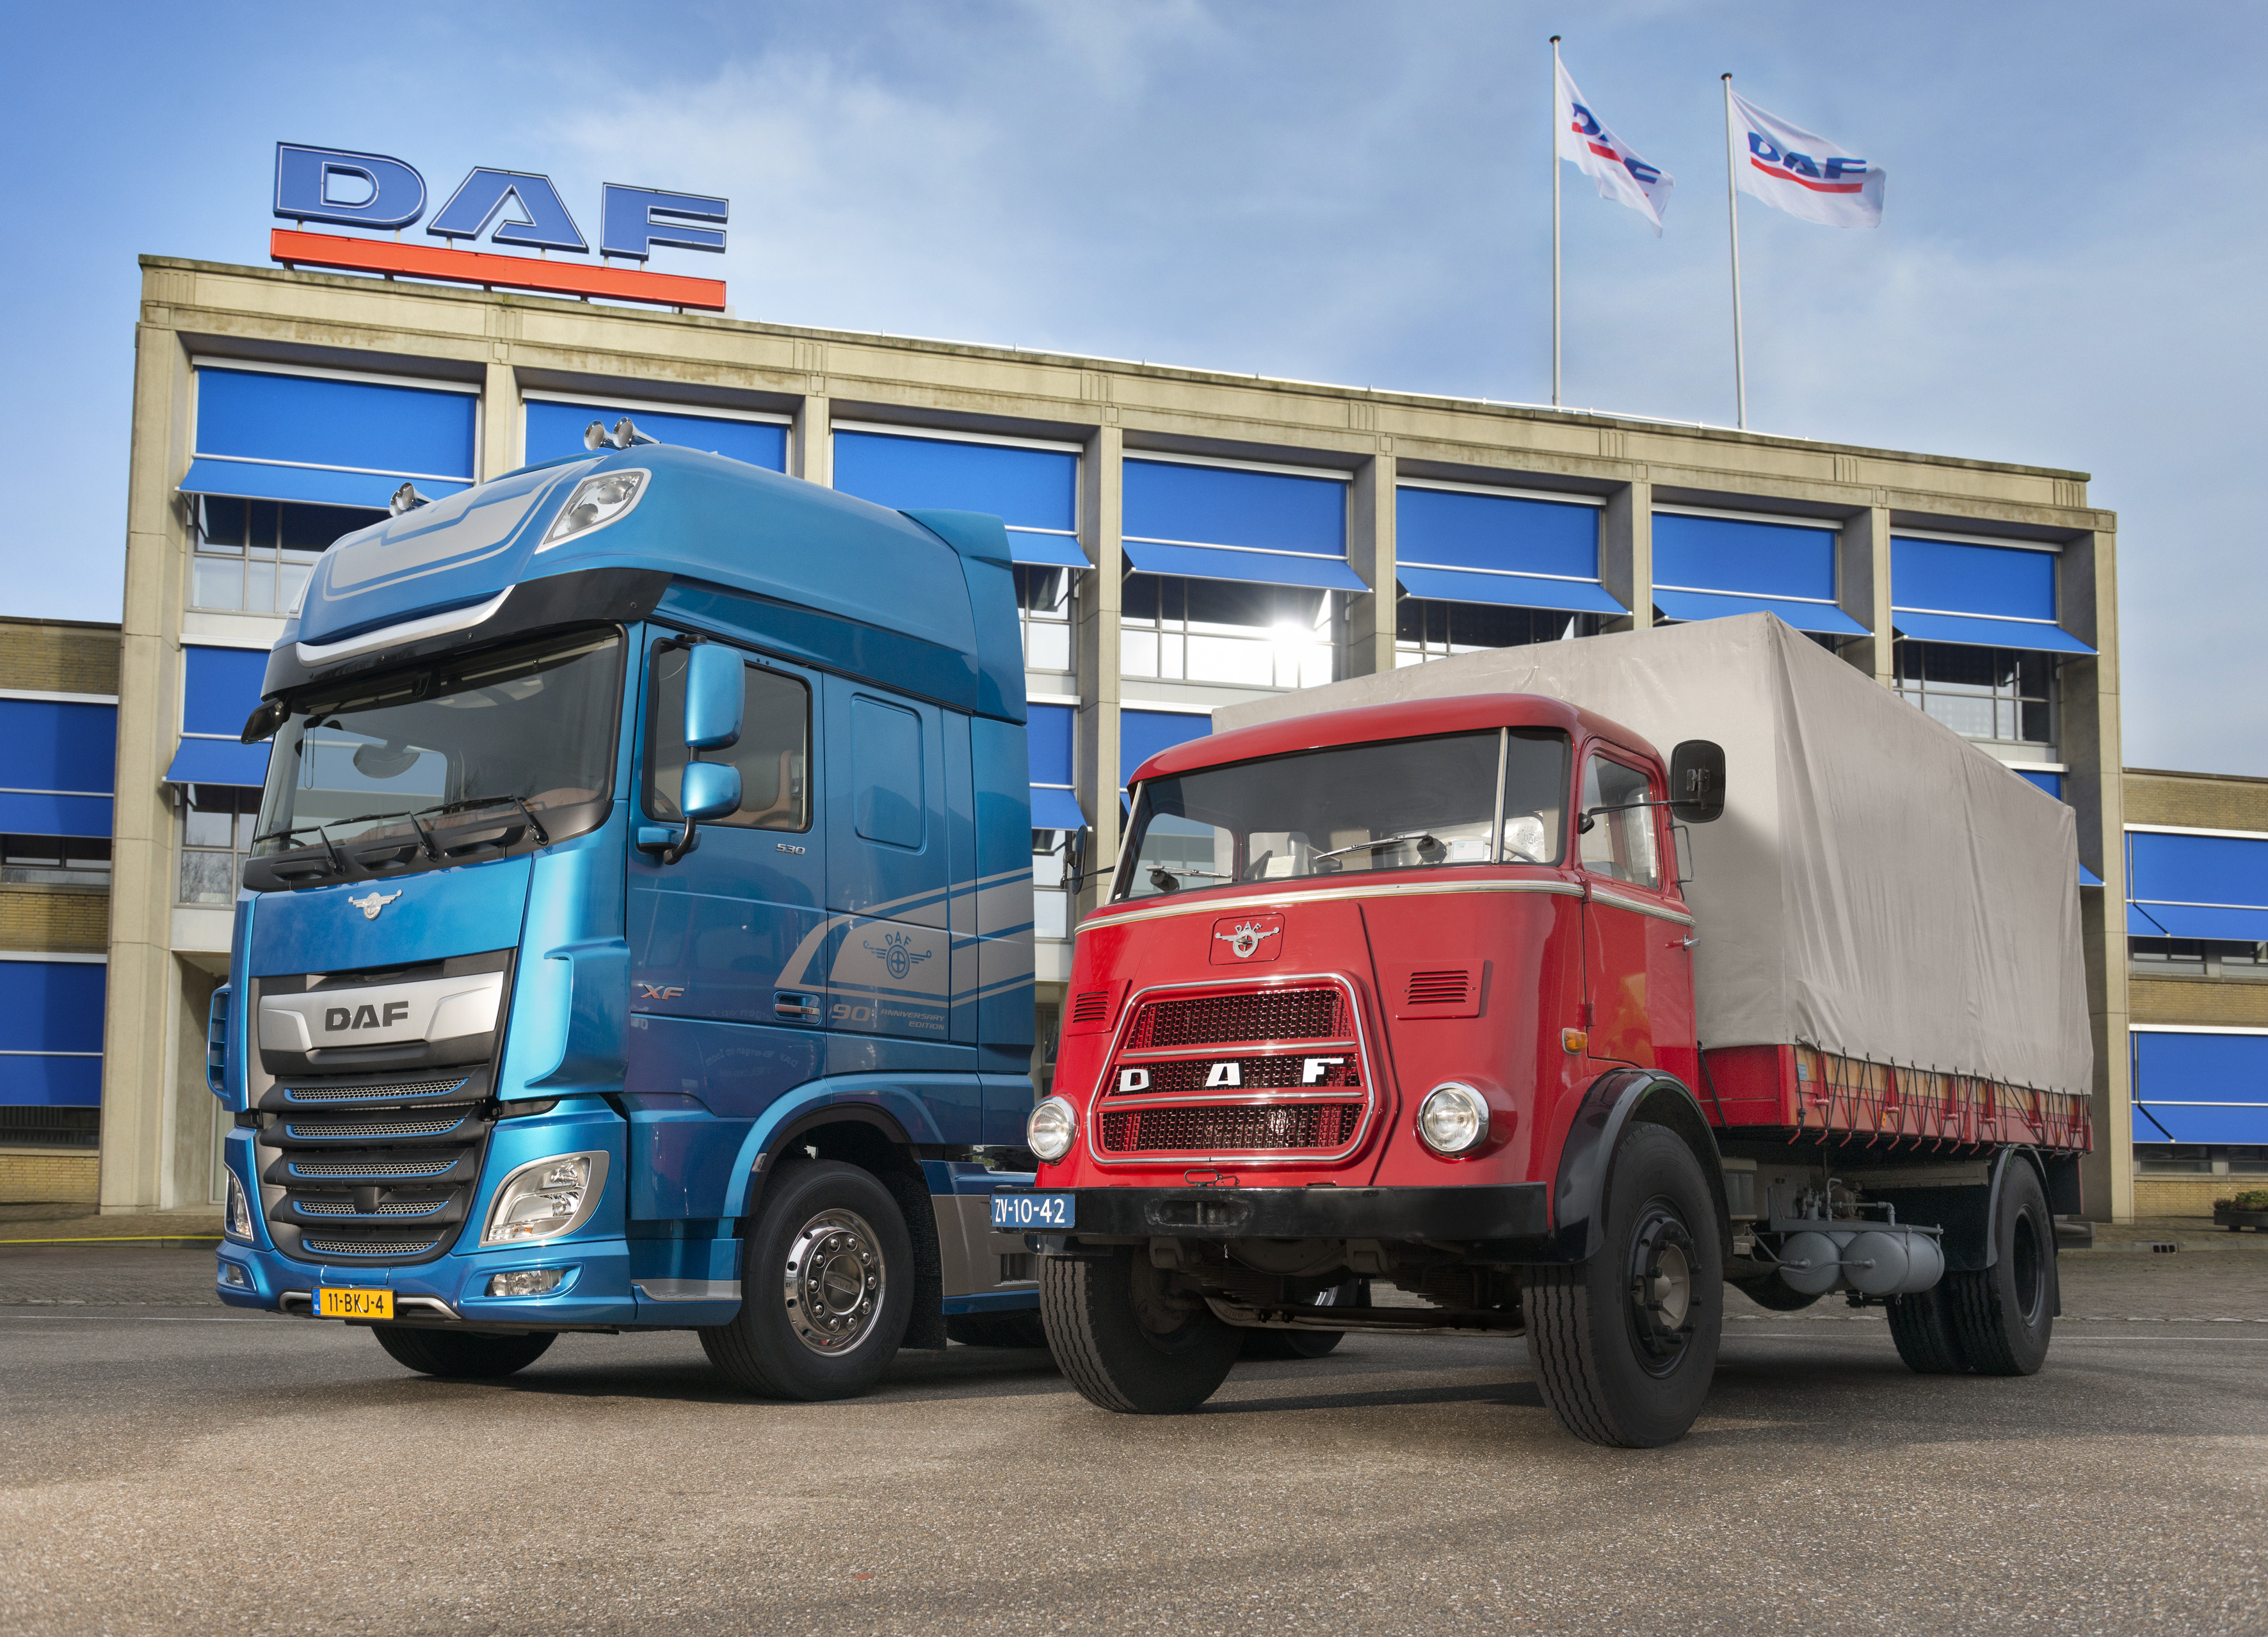 З такого скромного початку компанія DAF перетворилася на провідного виробника вантажних автомобілів в світі, який приділяє велику увагу інноваціям, якості та транспортної ефективності